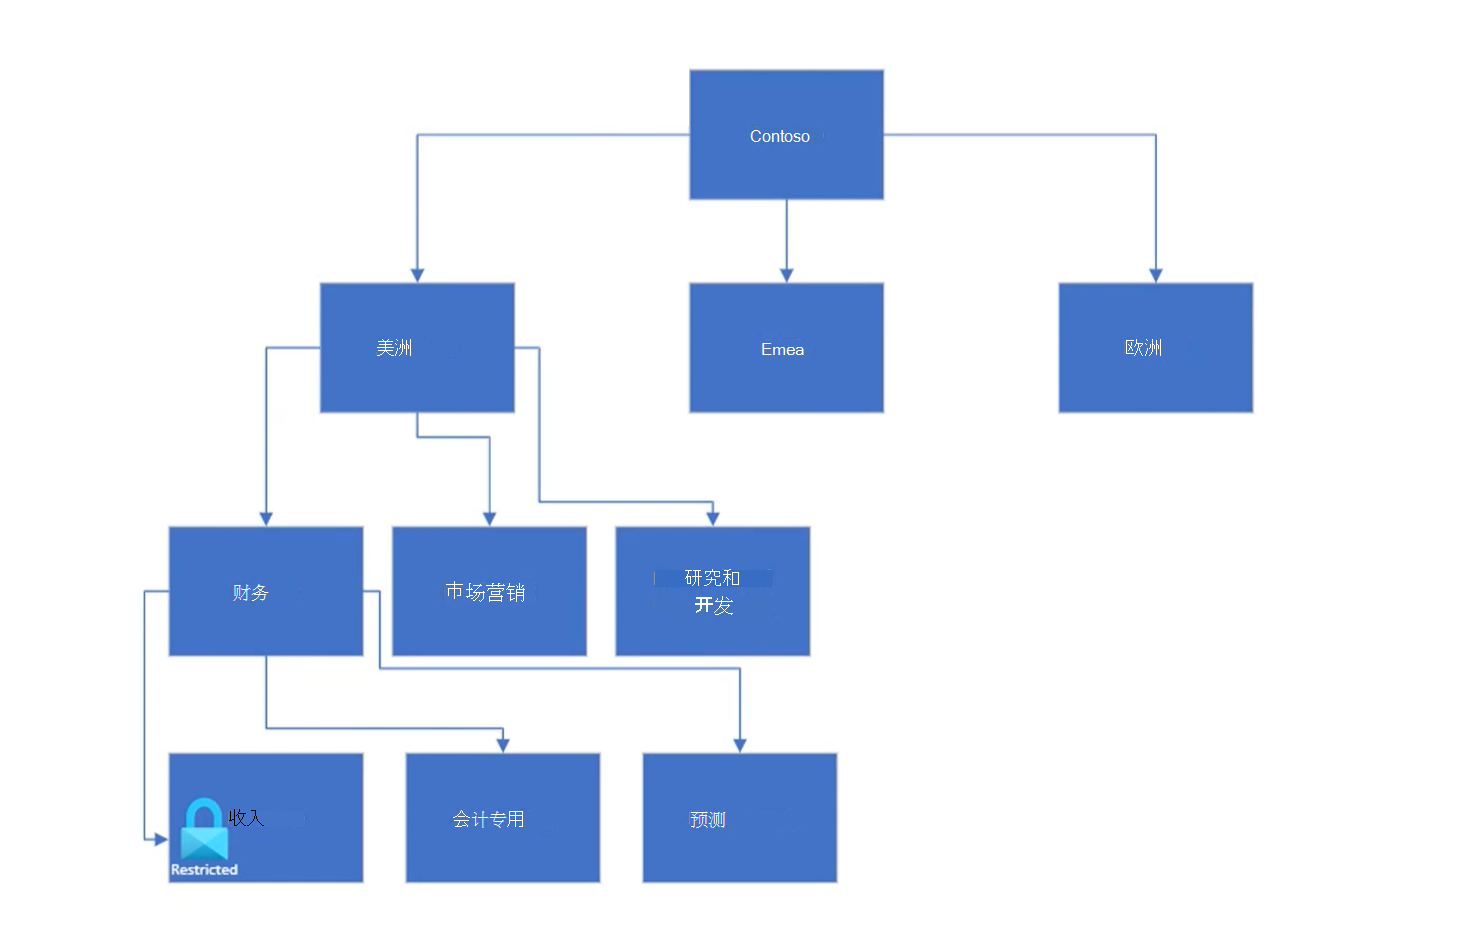 显示按区域和部门细分的示例集合层次结构的图表。